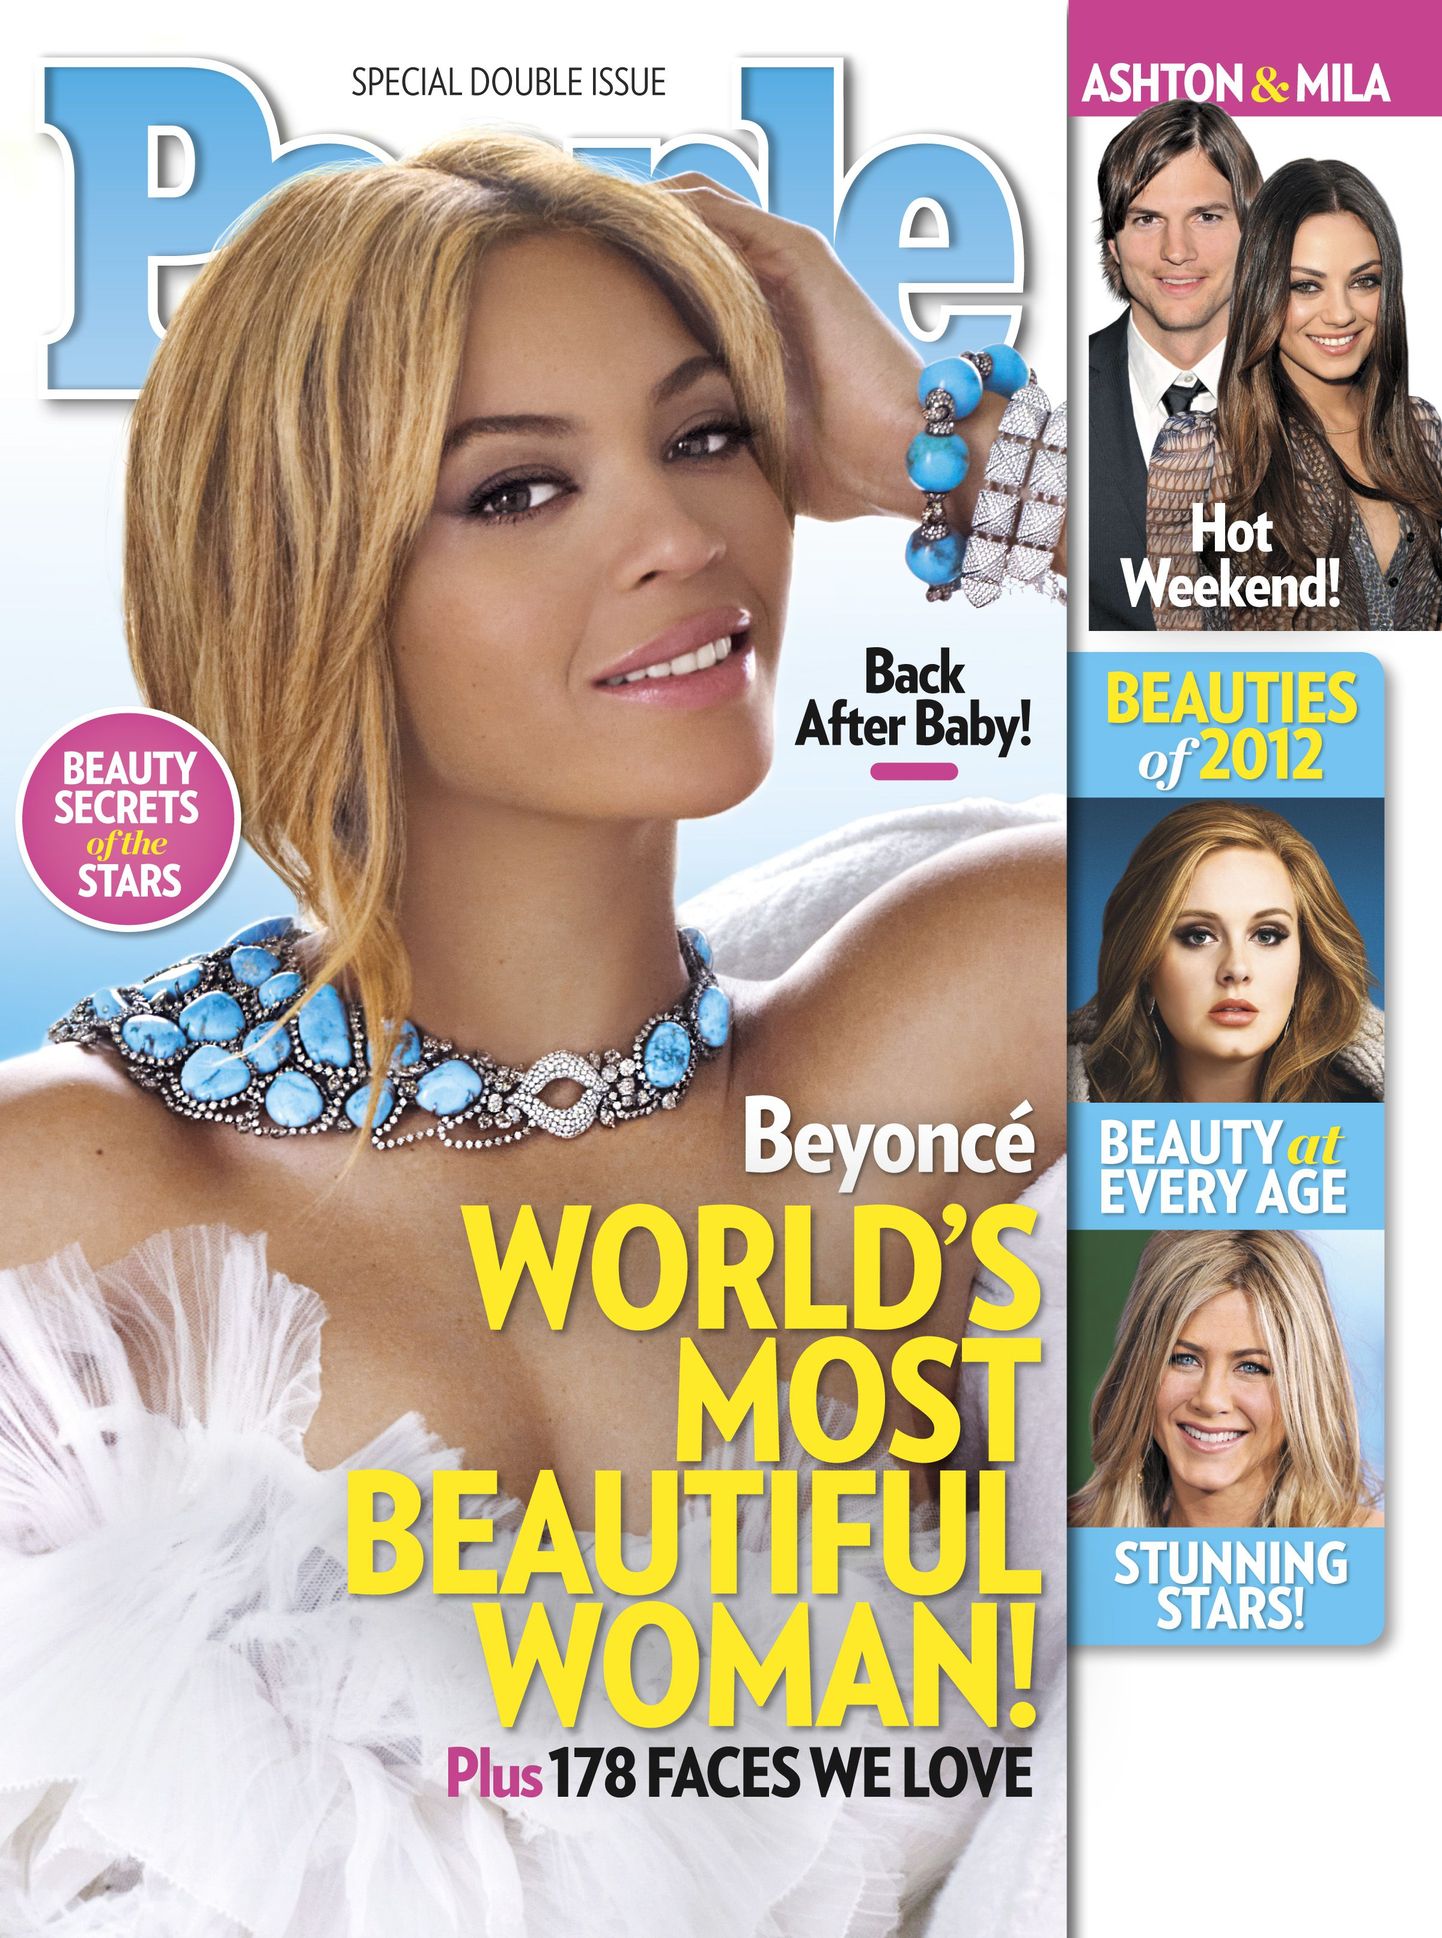 Ajakiri People nimetas Beyonce maailma kõige ilusamaks naiskeks